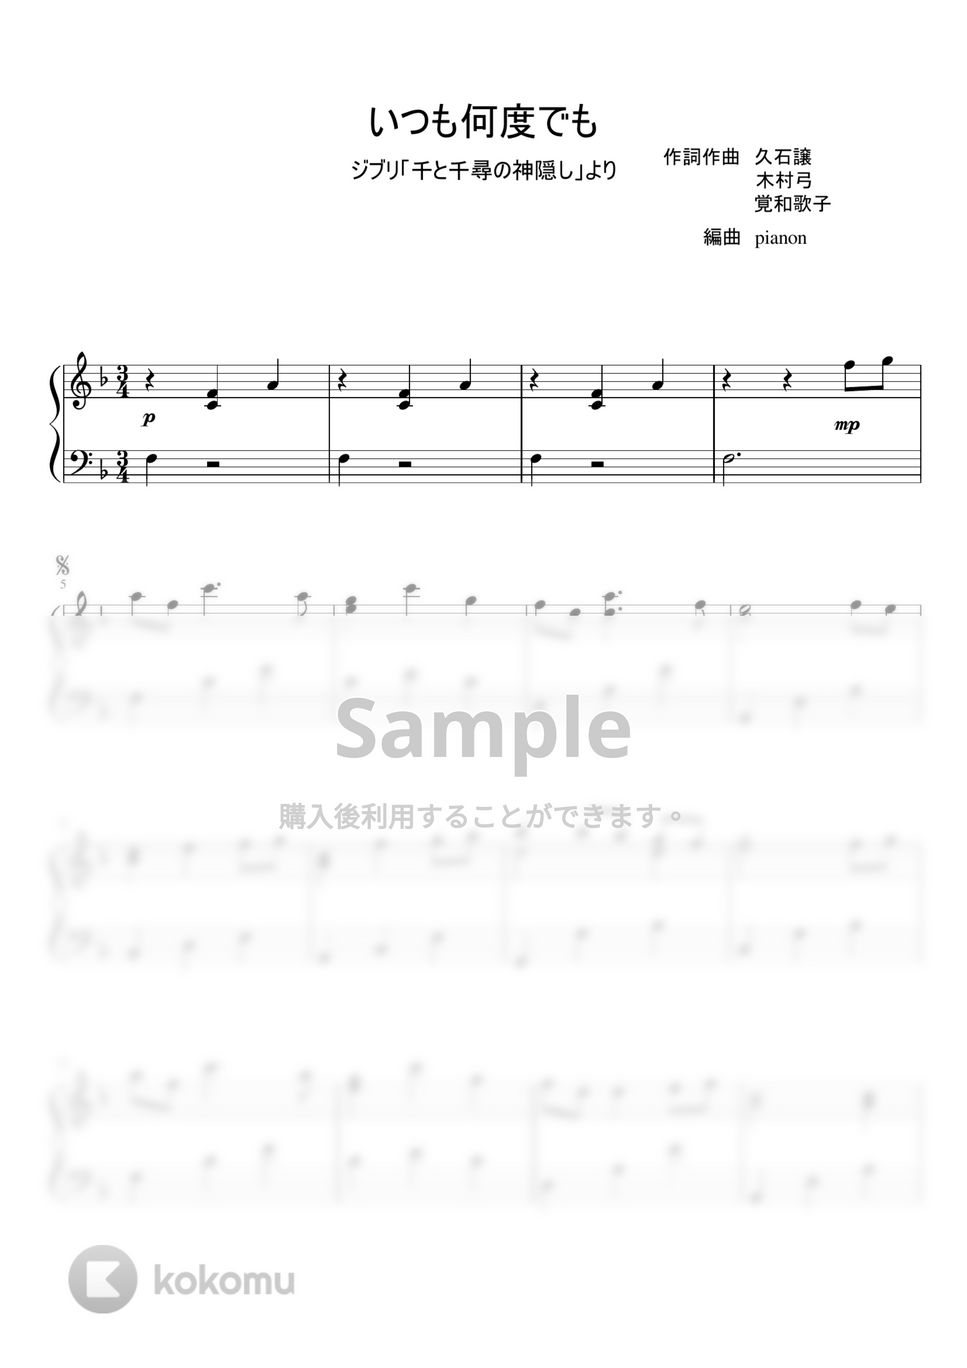 木村弓 - いつも何度でも (ピアノソロ) by pianon楽譜